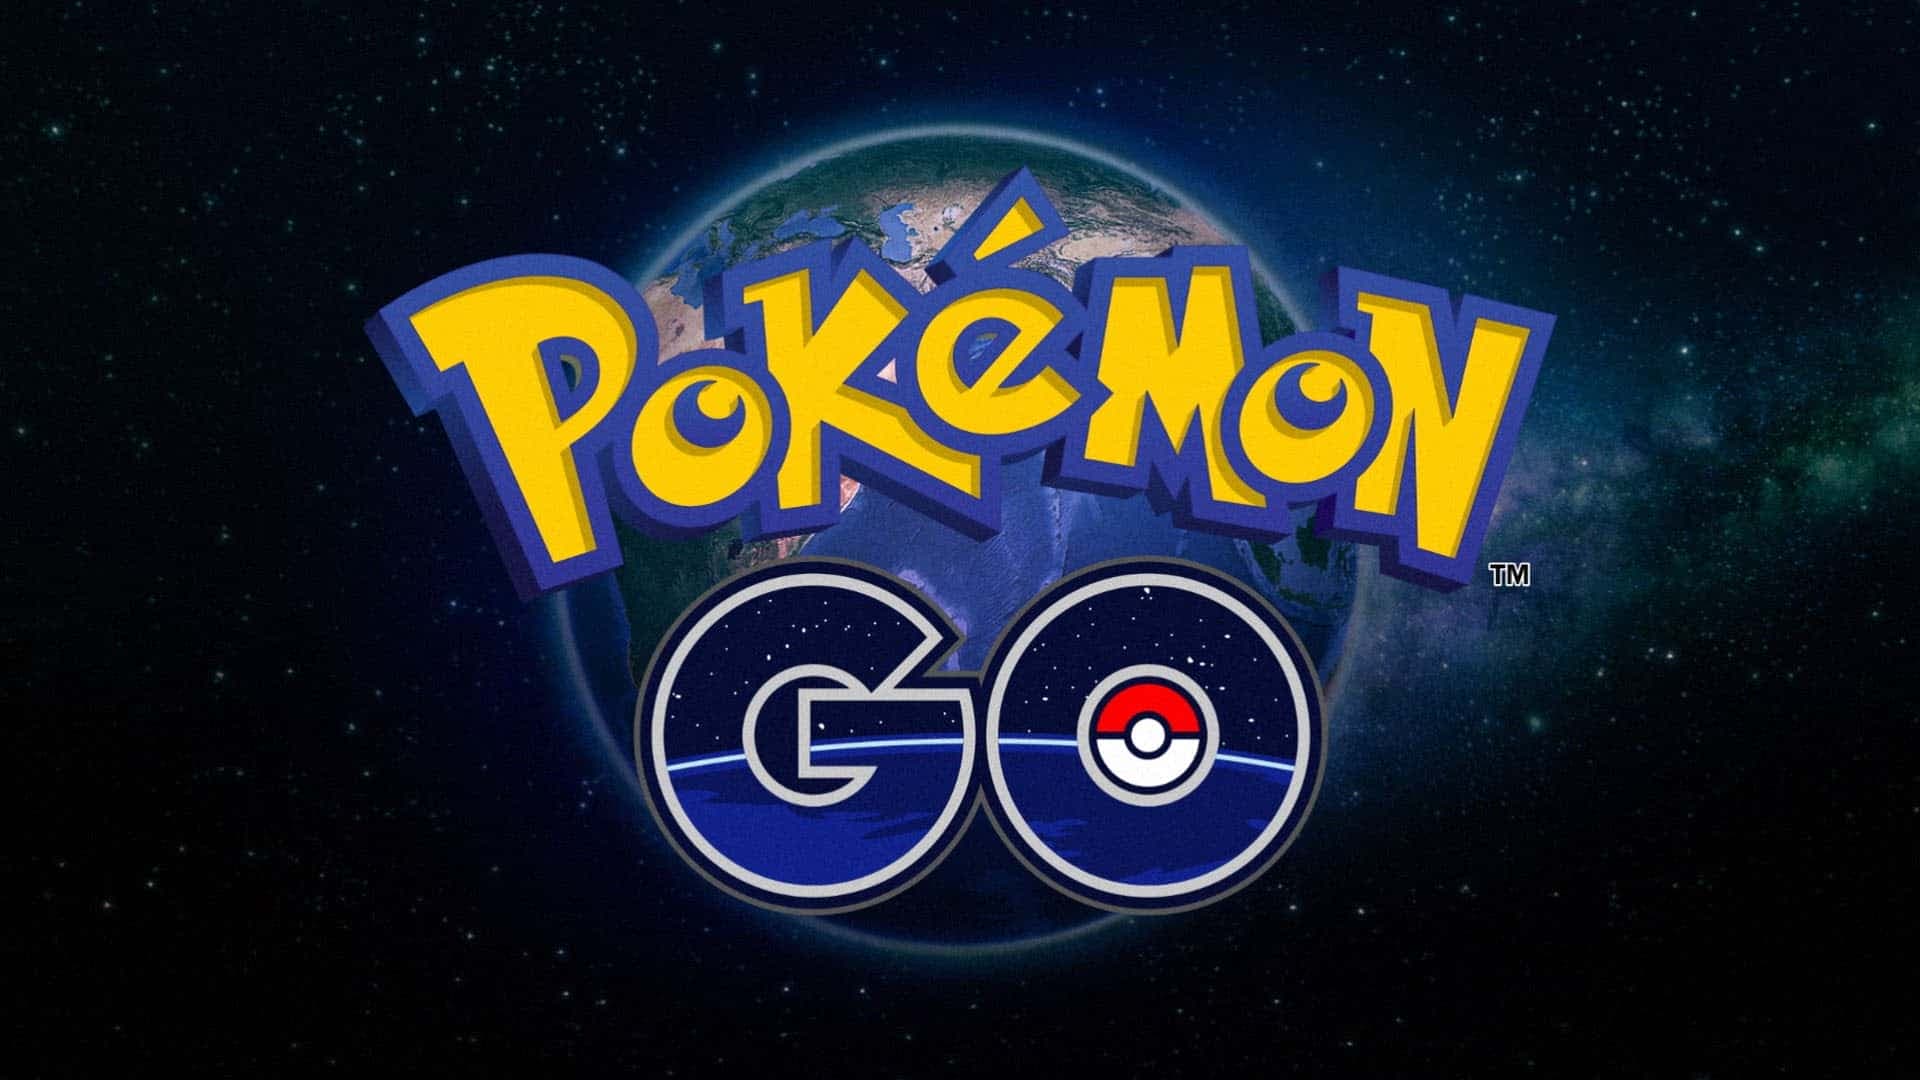 What Is Pokémon Go?